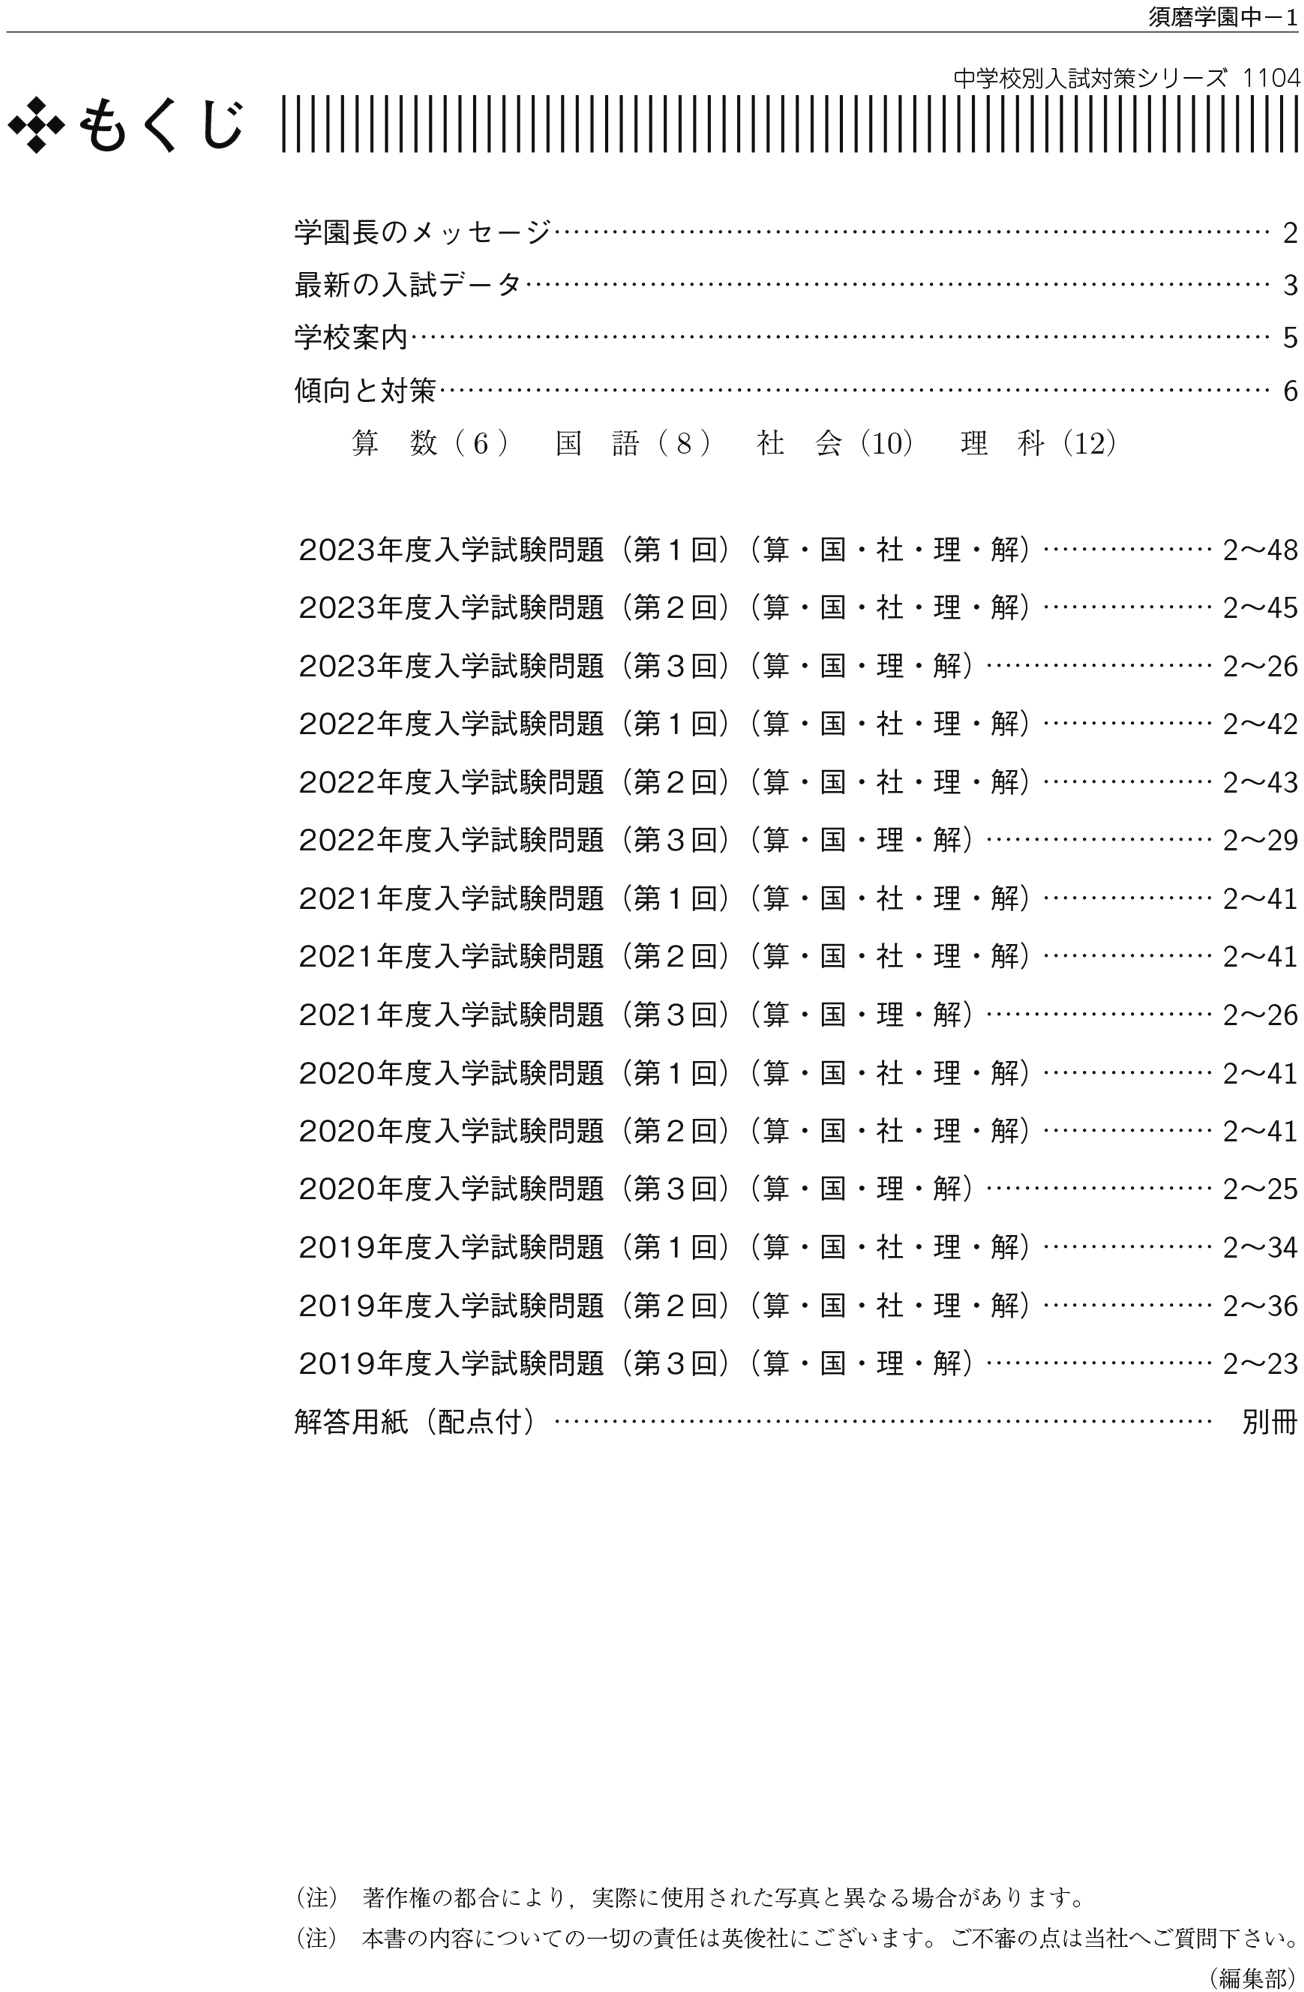 20160711須磨学園中学校 2017年度受験用 赤本 1104 (中学校別入試対策シリーズ)